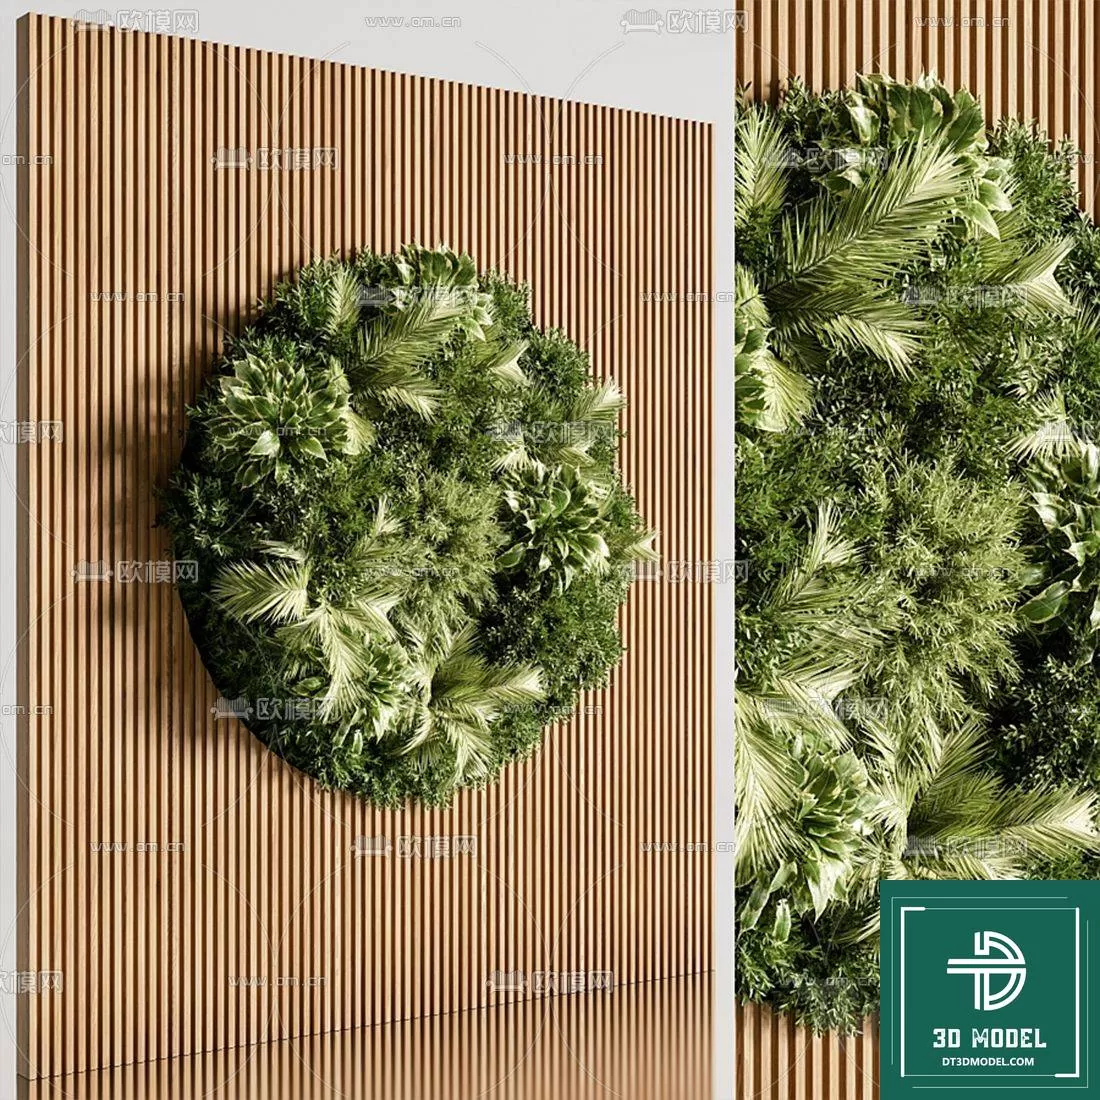 VERTICAL GARDEN – FITOWALL PLANT 3D MODEL – 159